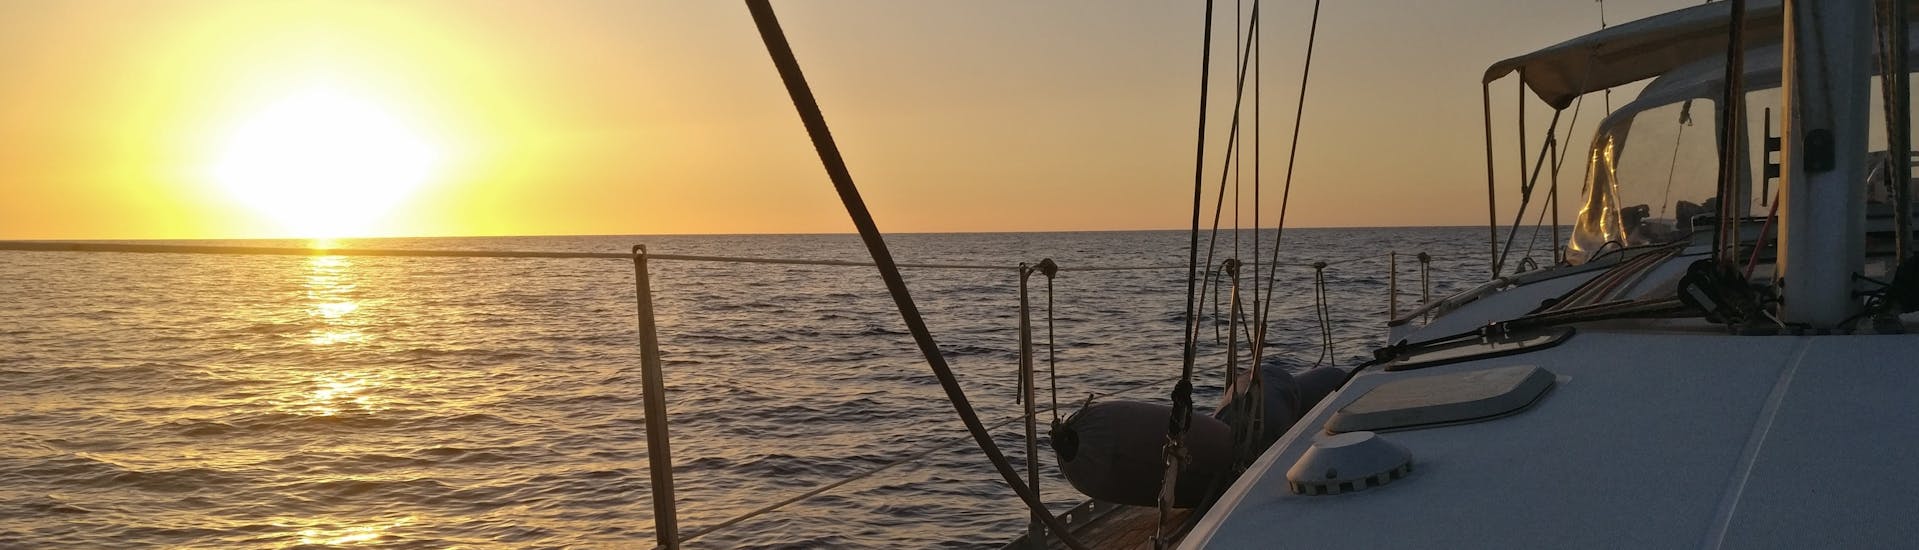 Vista del mare al tramonto da una barca di Quarantesimo Parallelo Leuca durante la gita in barca a vela privata da Leuca alla costa del Salento.